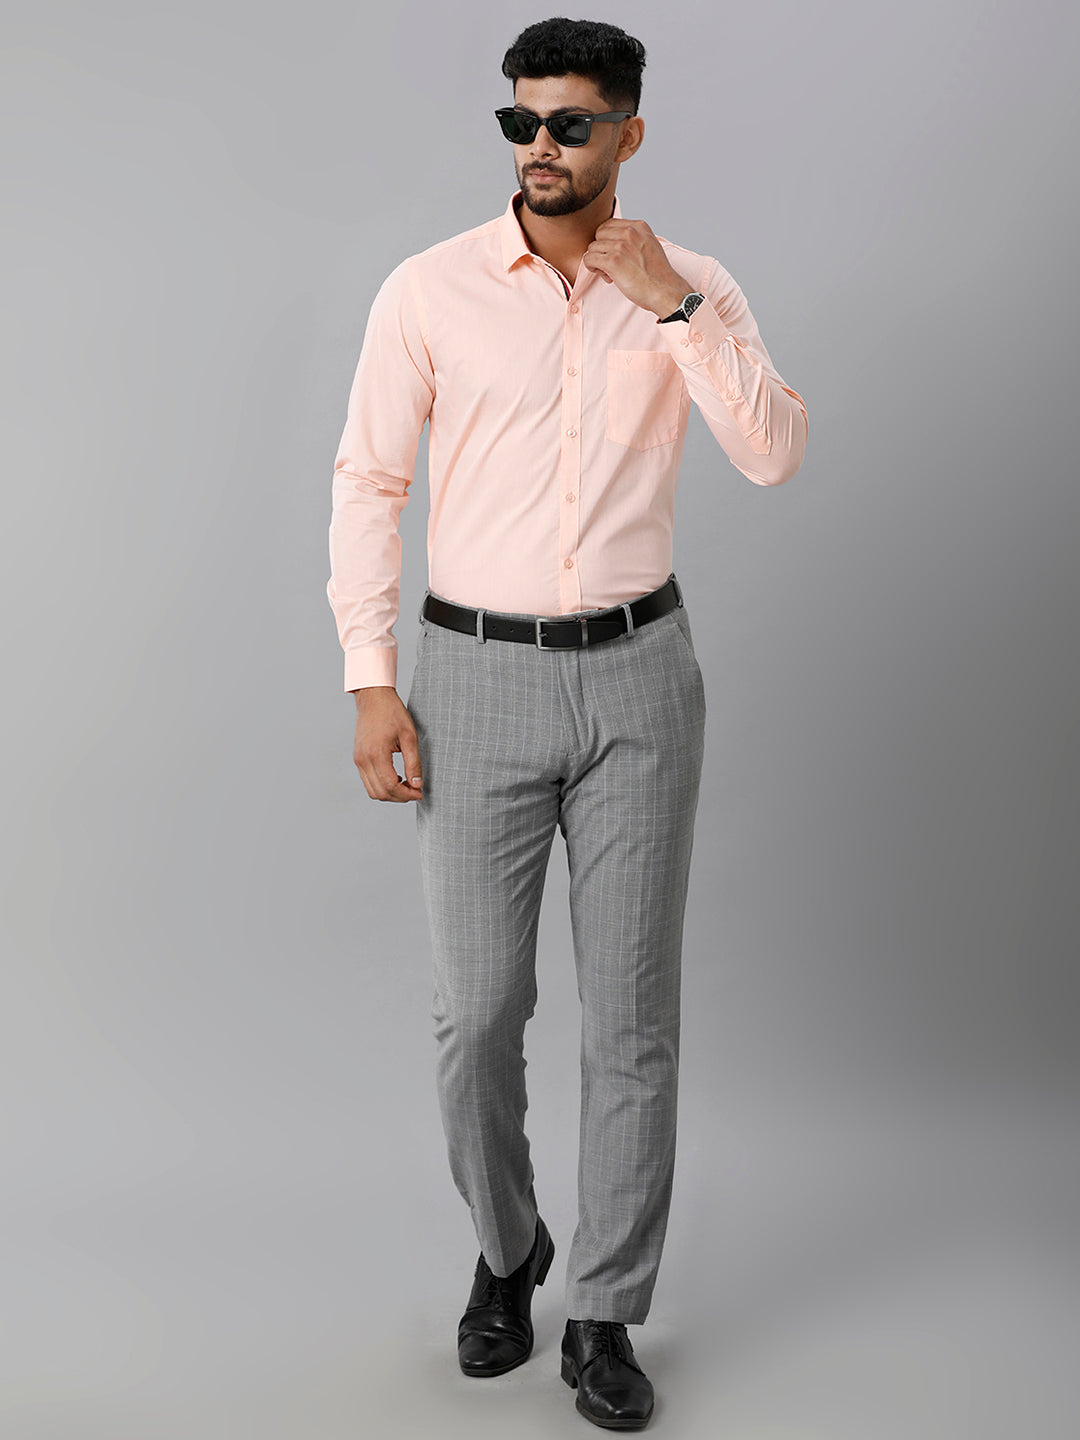 Mens Premium Cotton Formal Shirt Full Sleeves Light Orange MH G117-Full view